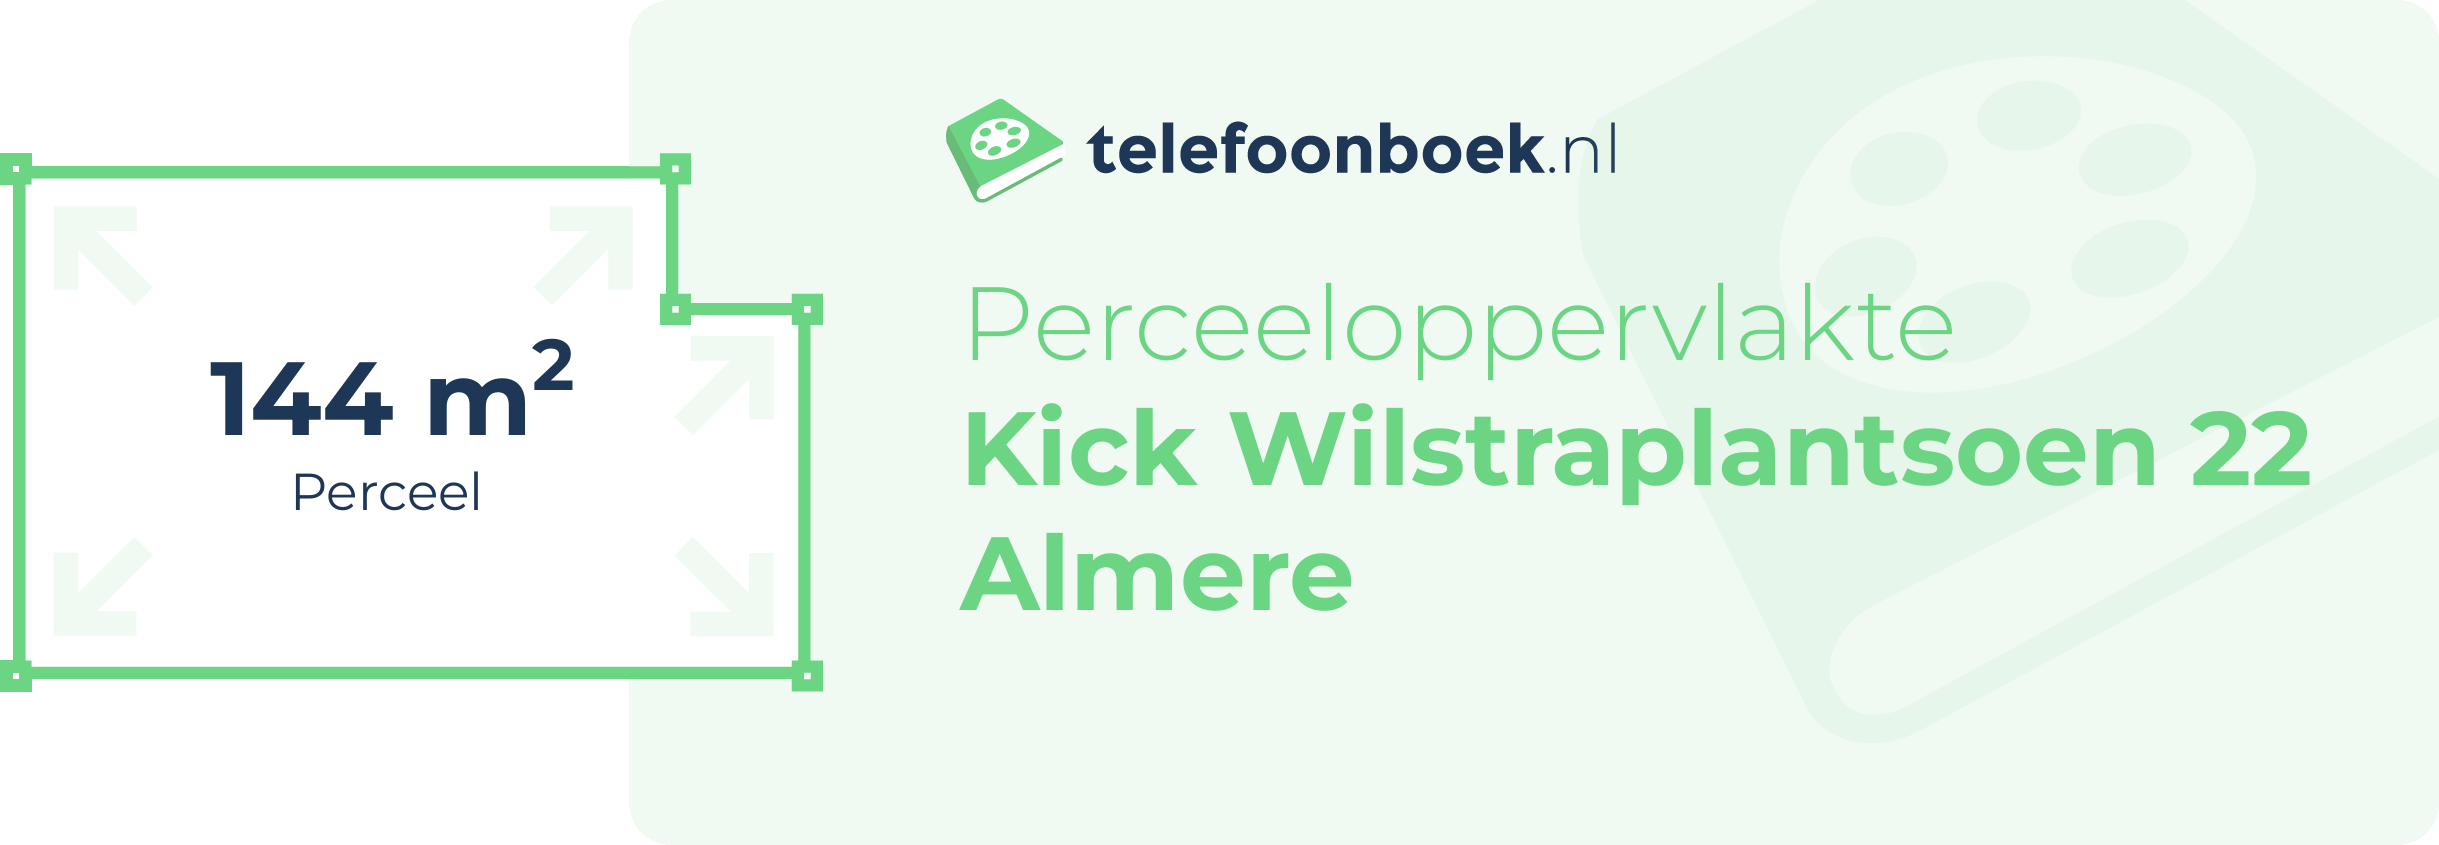 Perceeloppervlakte Kick Wilstraplantsoen 22 Almere